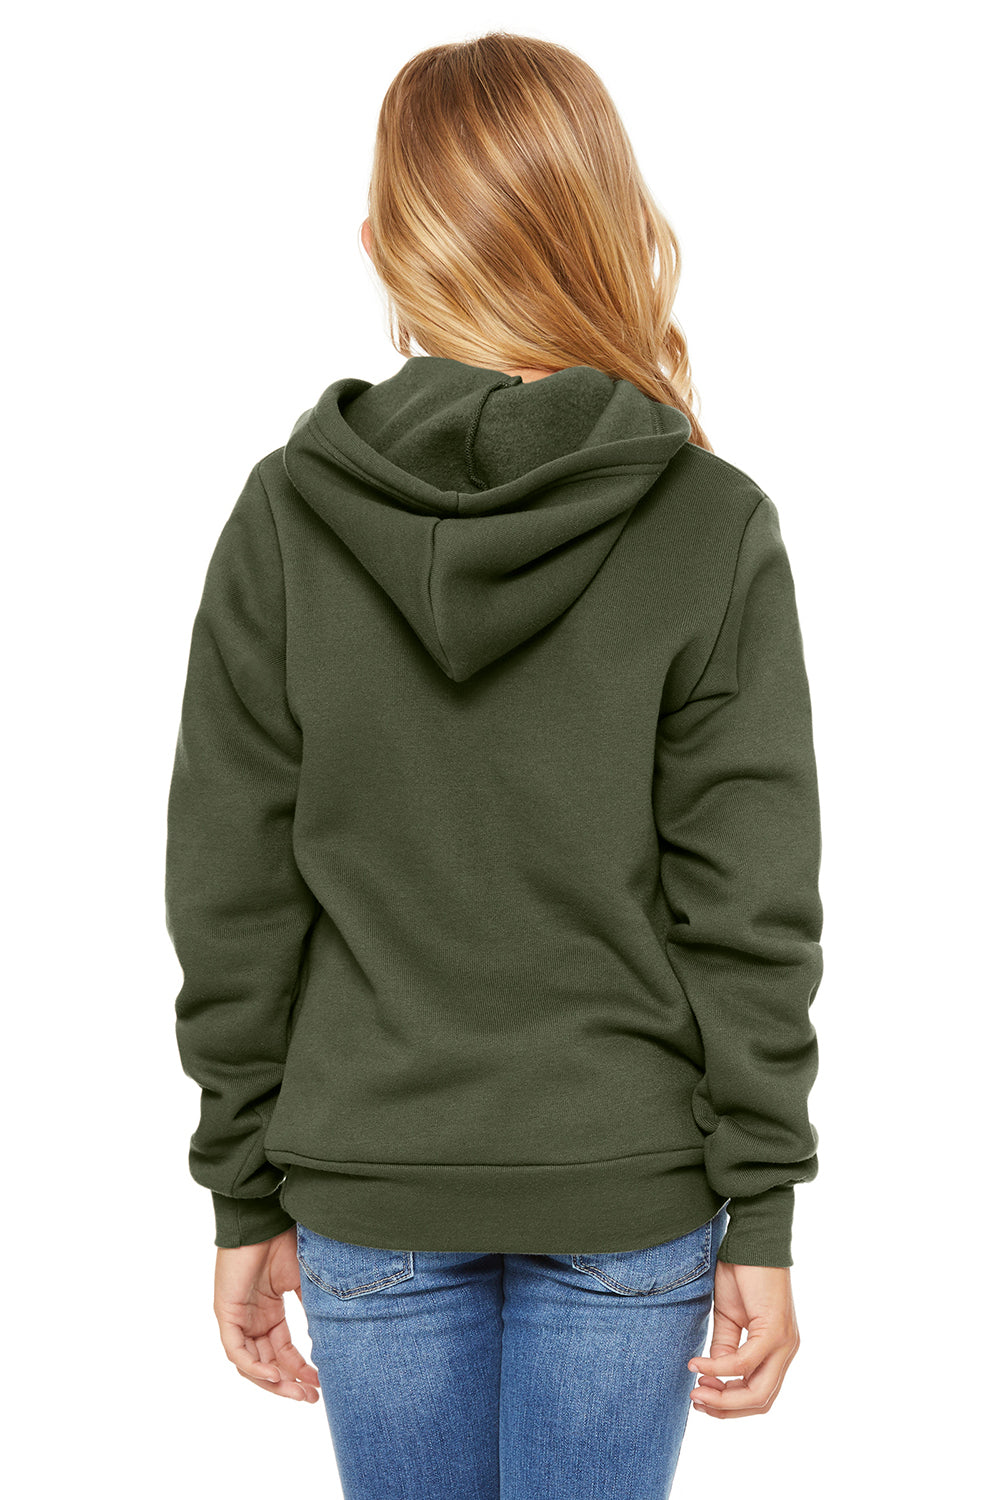 Bella + Canvas 3719Y/BC3719Y Youth Sponge Fleece Hooded Sweatshirt Hoodie Military Green Model Back